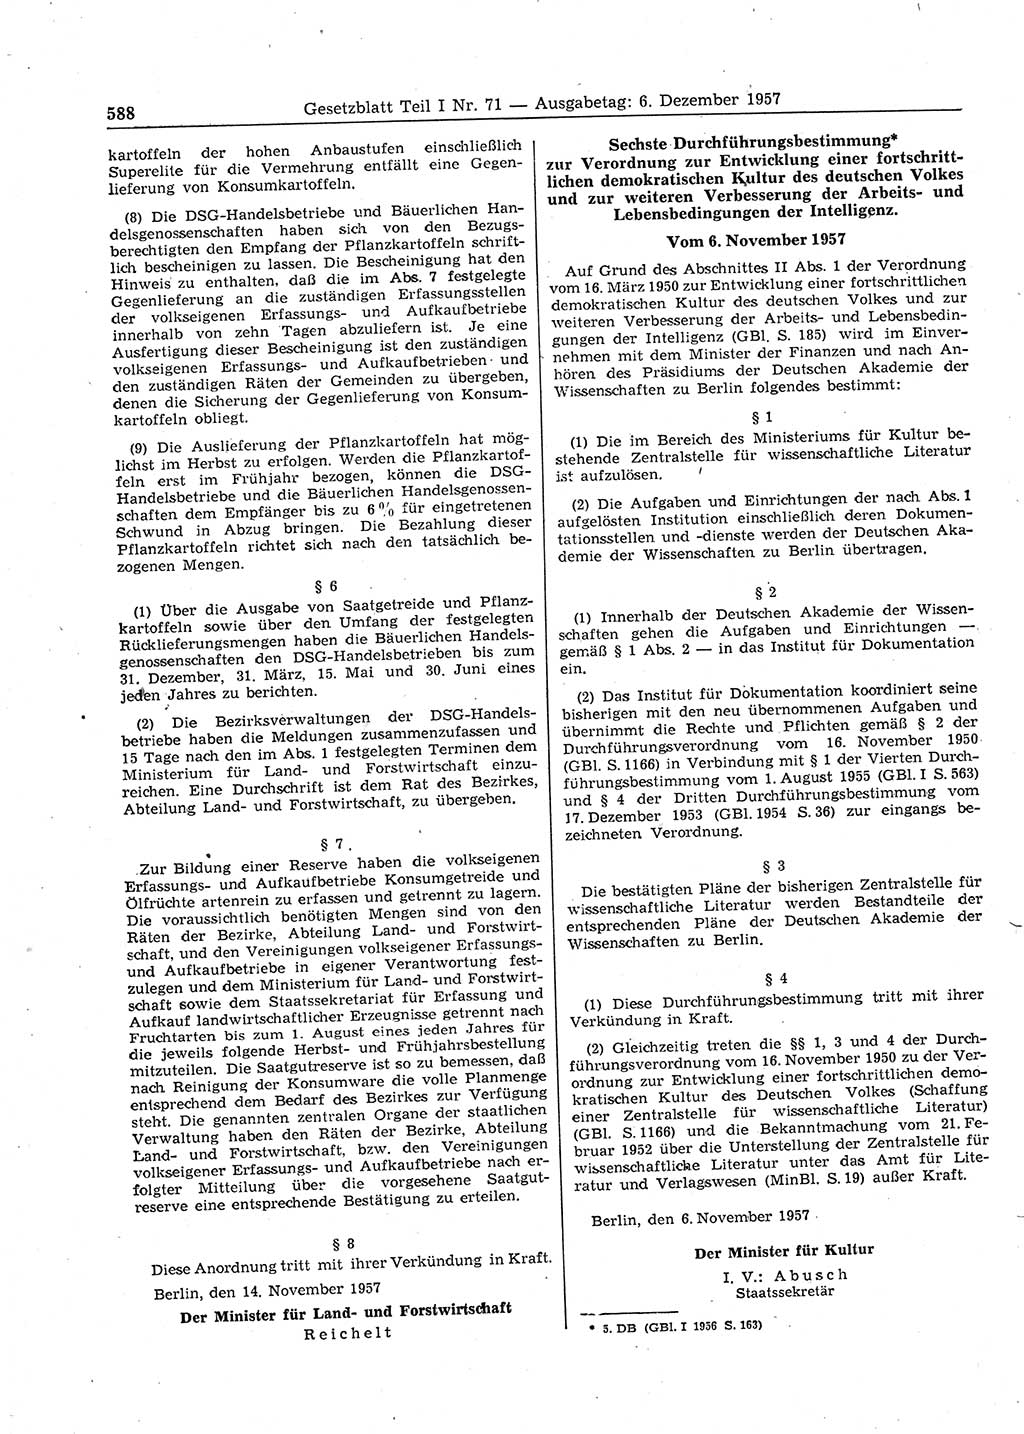 Gesetzblatt (GBl.) der Deutschen Demokratischen Republik (DDR) Teil Ⅰ 1957, Seite 588 (GBl. DDR Ⅰ 1957, S. 588)